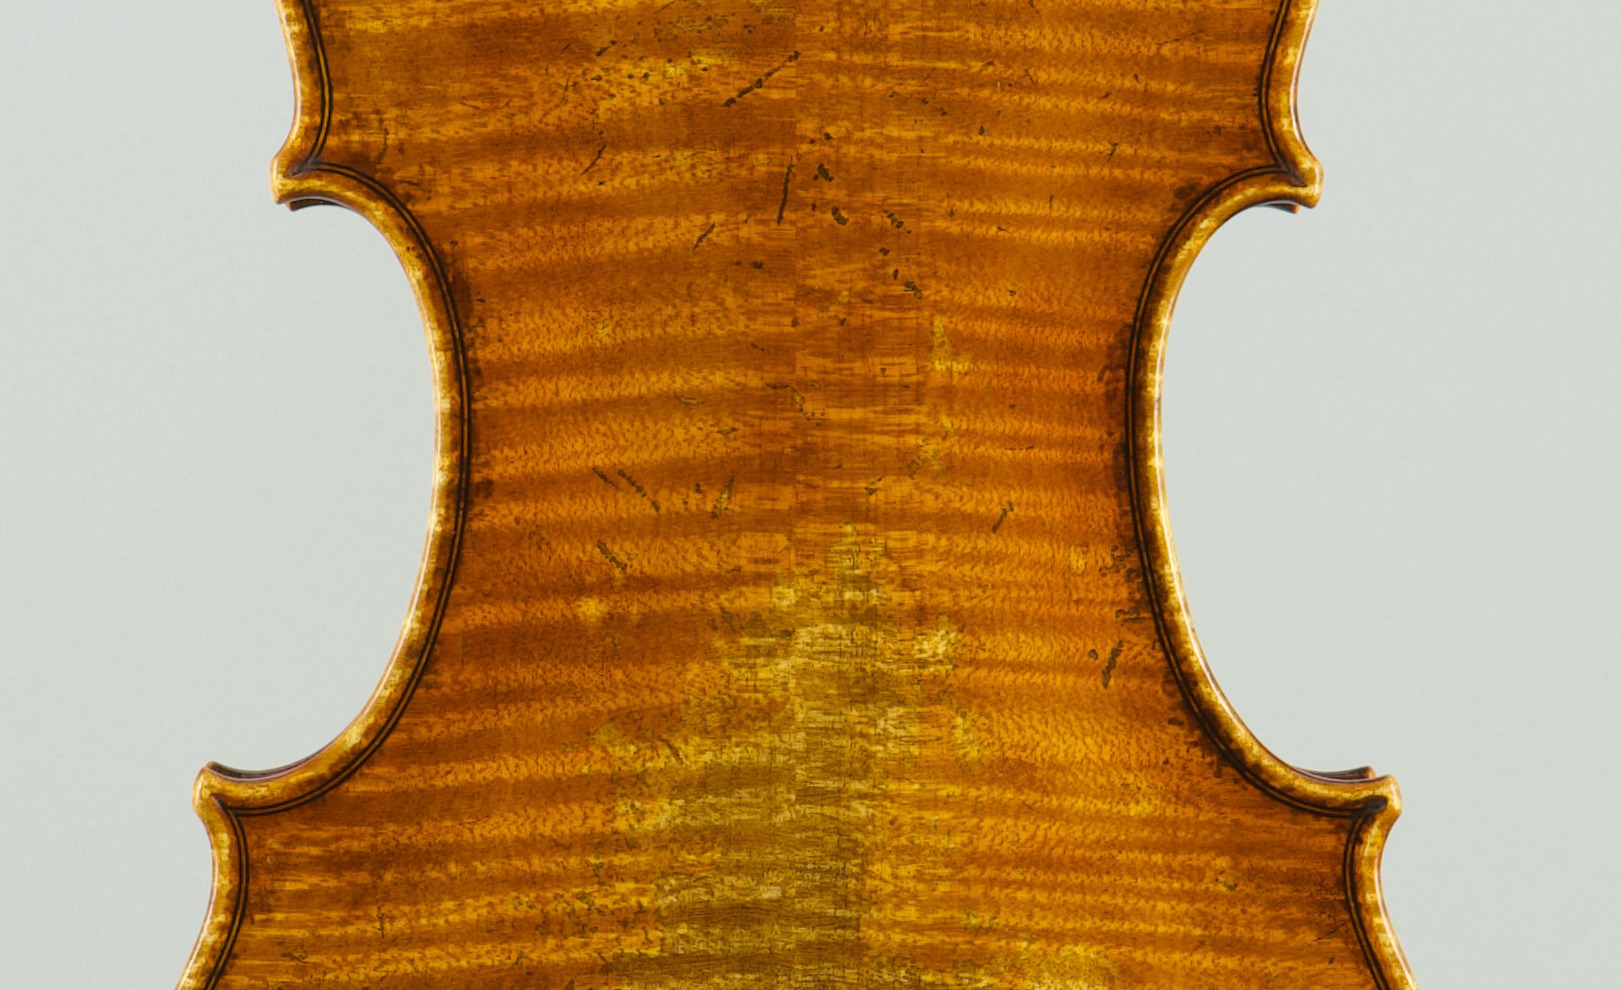 violoncello A.Stradivari